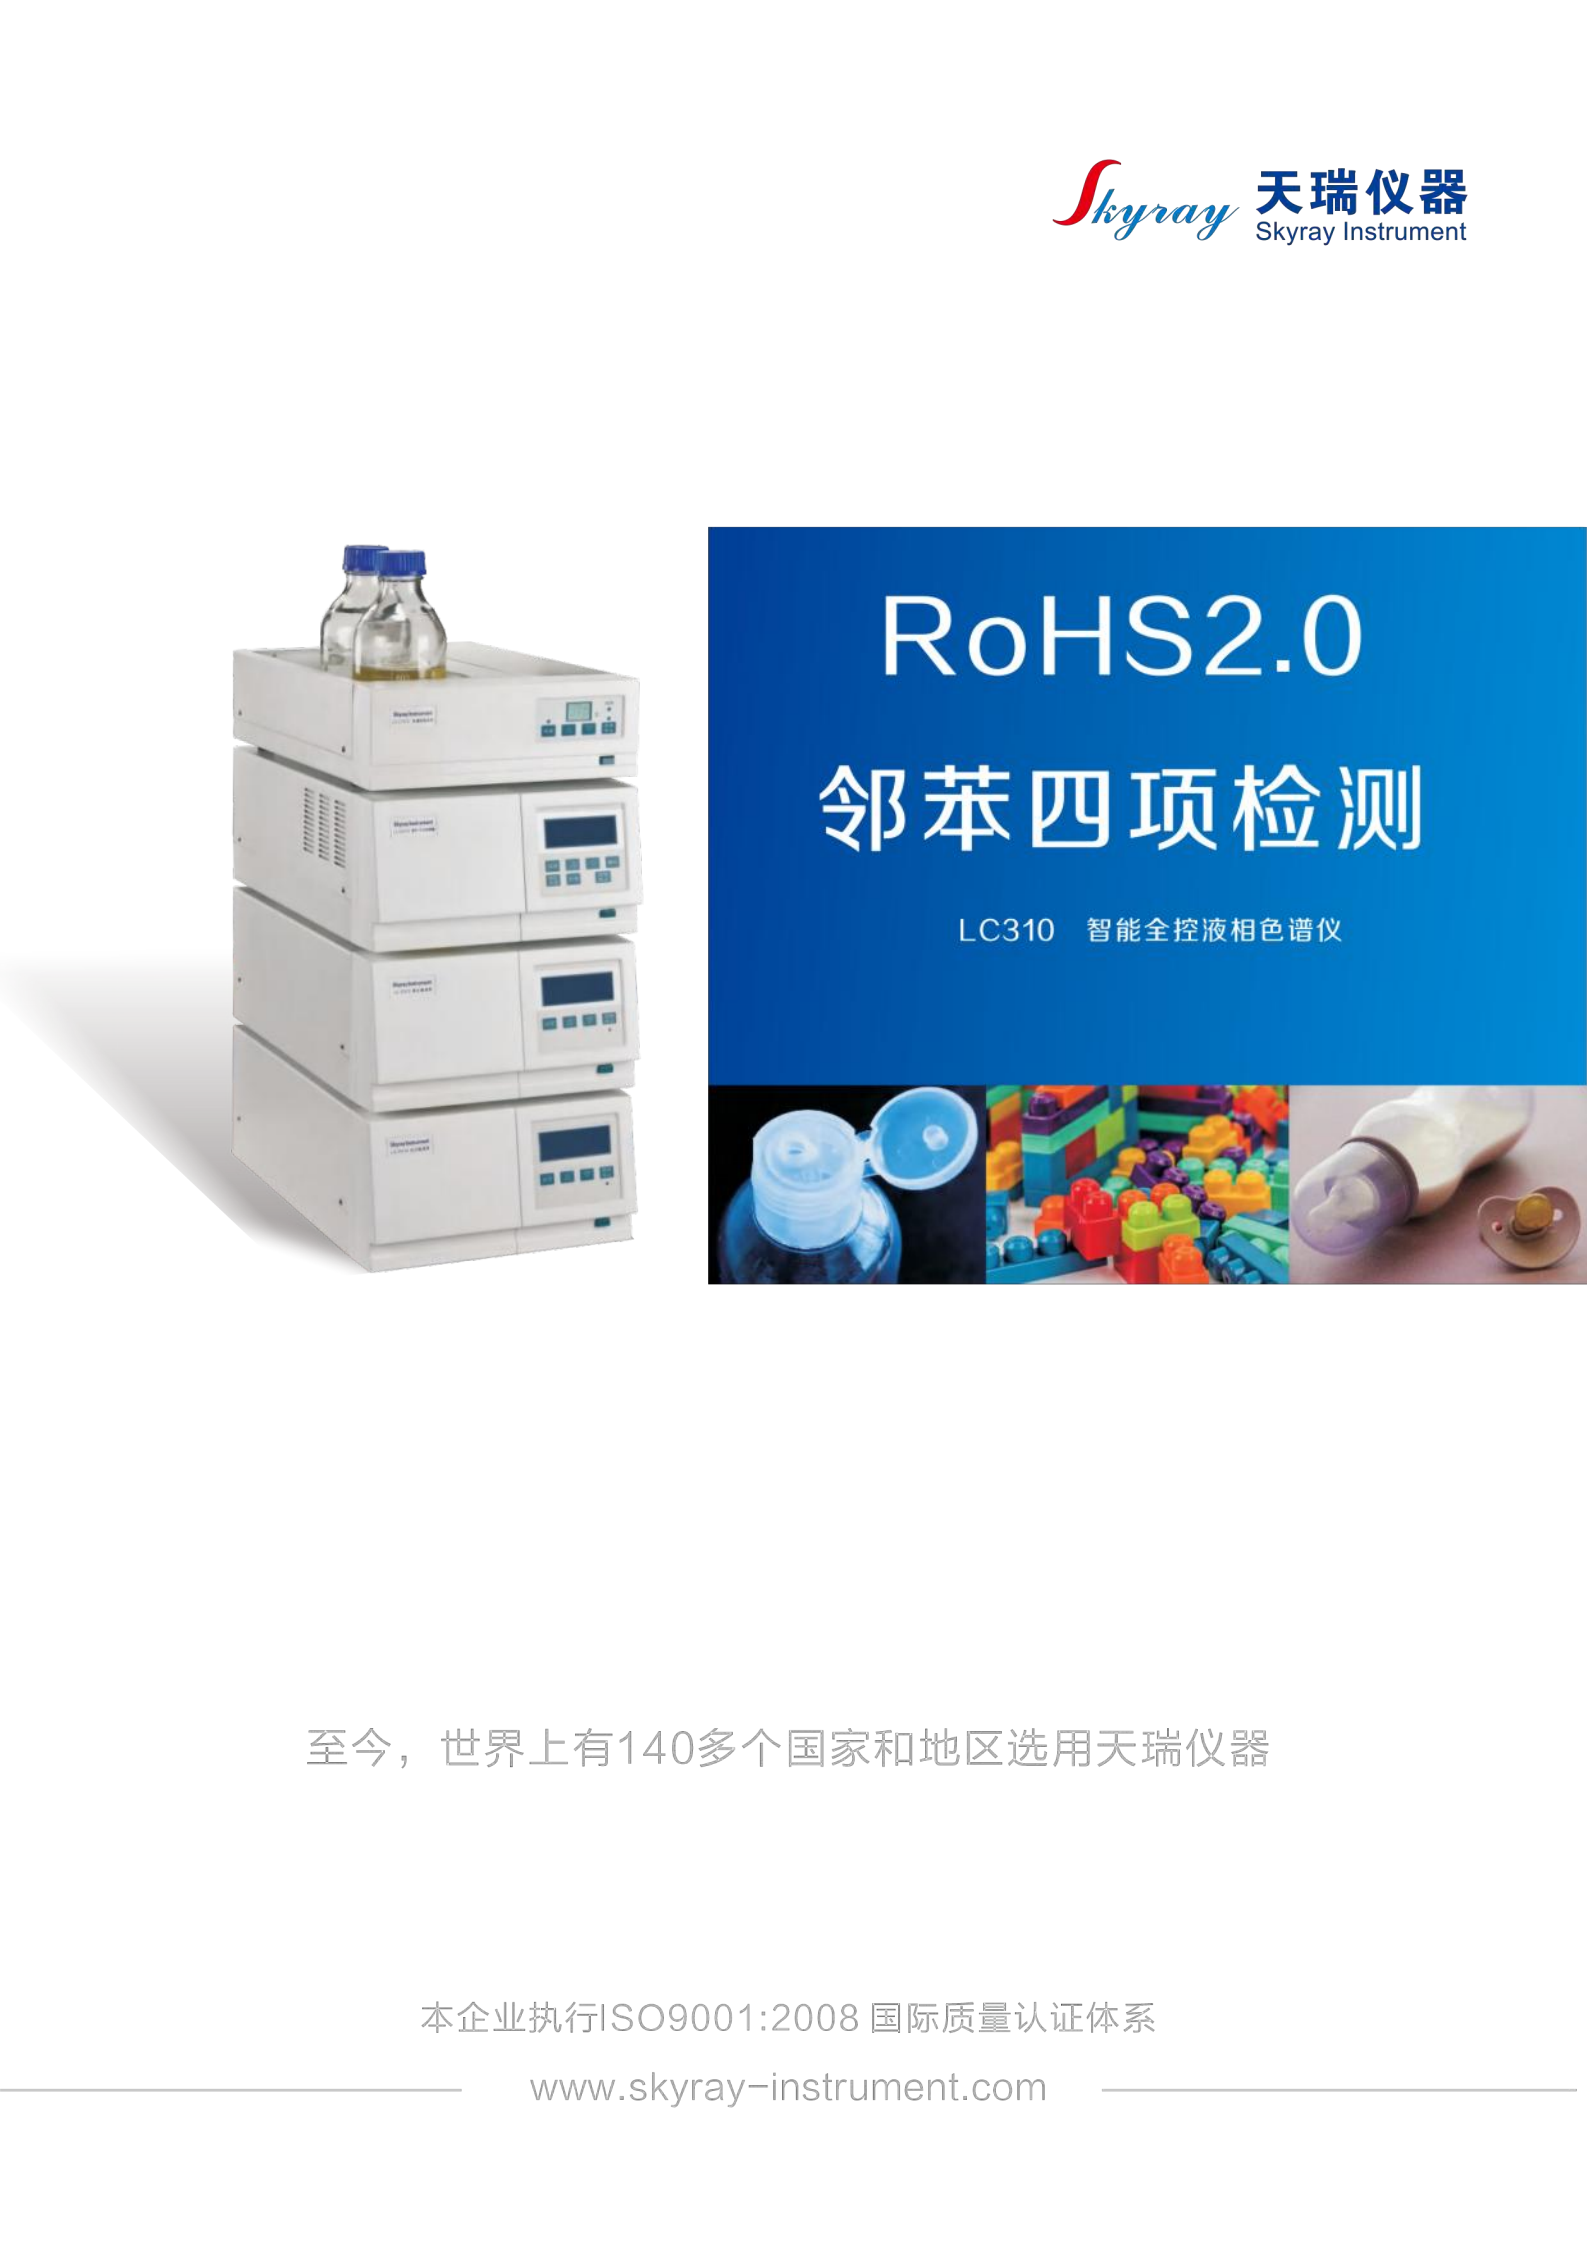 江苏天瑞仪器股份有限公司-RoHS2.0检测解决方案（LC310液相色谱)